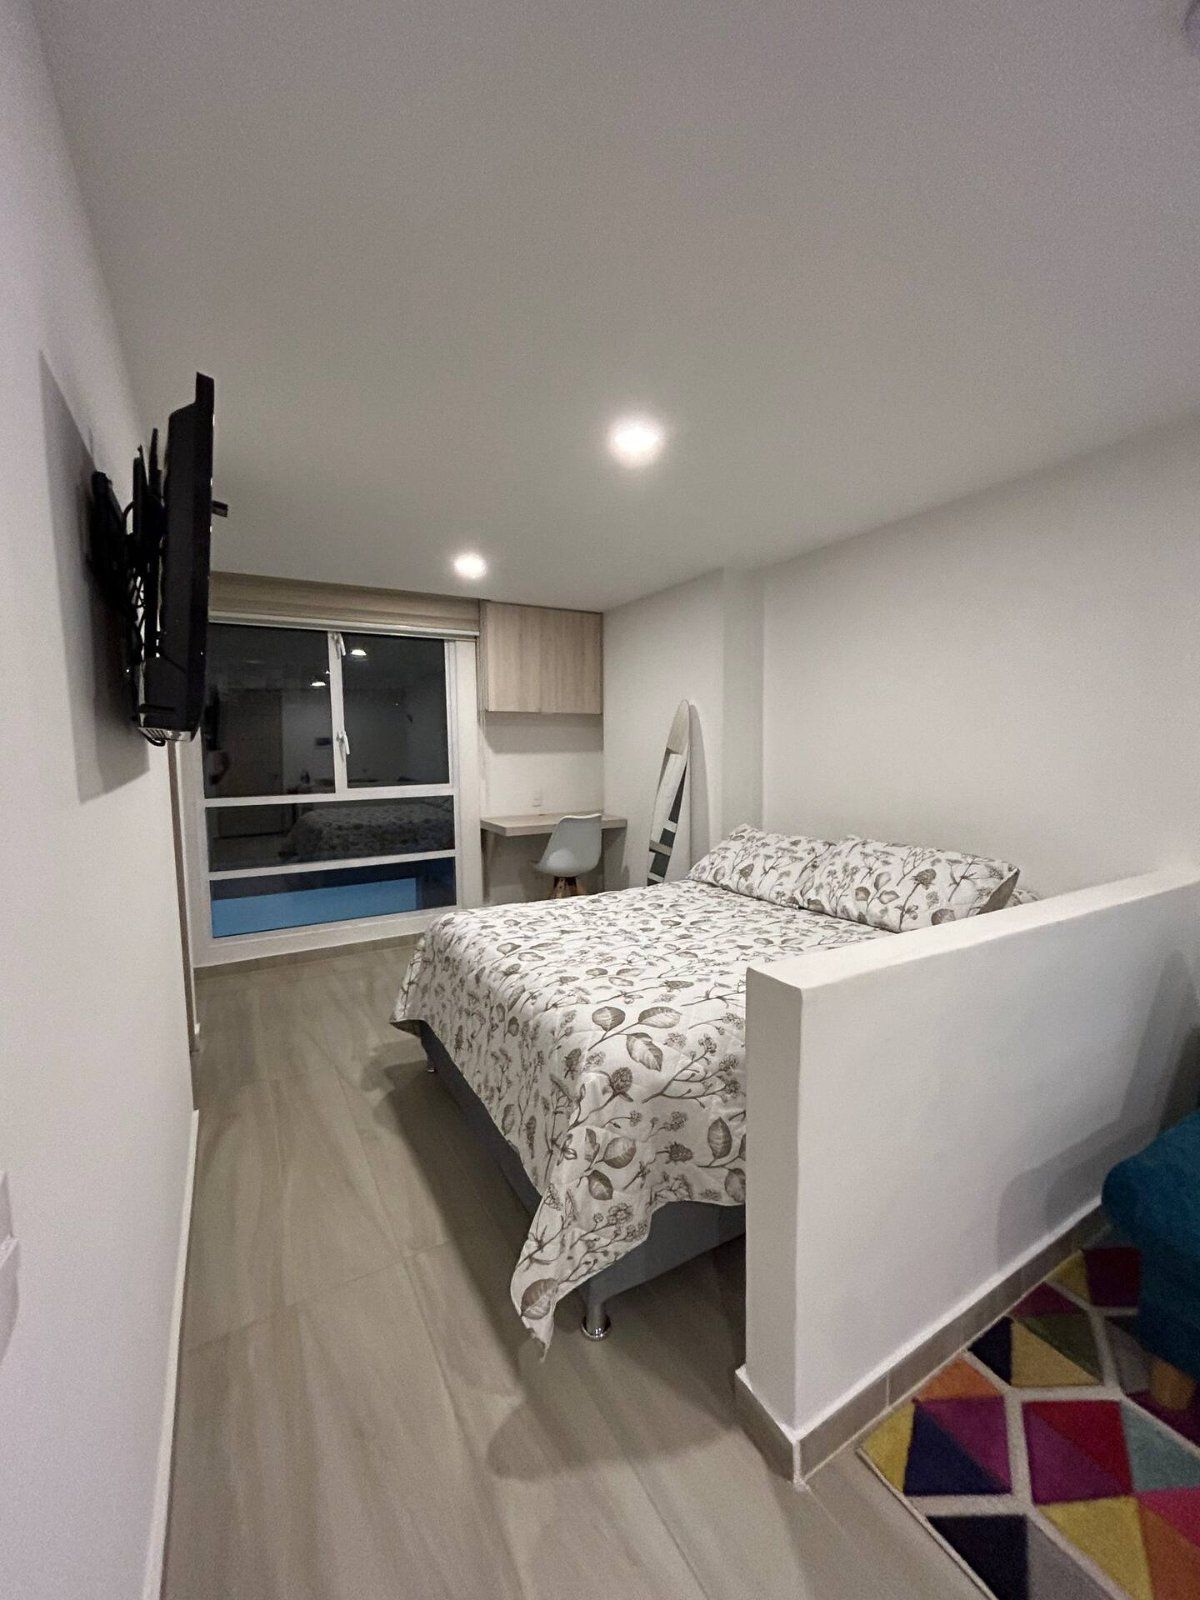 Apartamento en arriendo Eduardo Santos 28 m² - $ 1.900.000